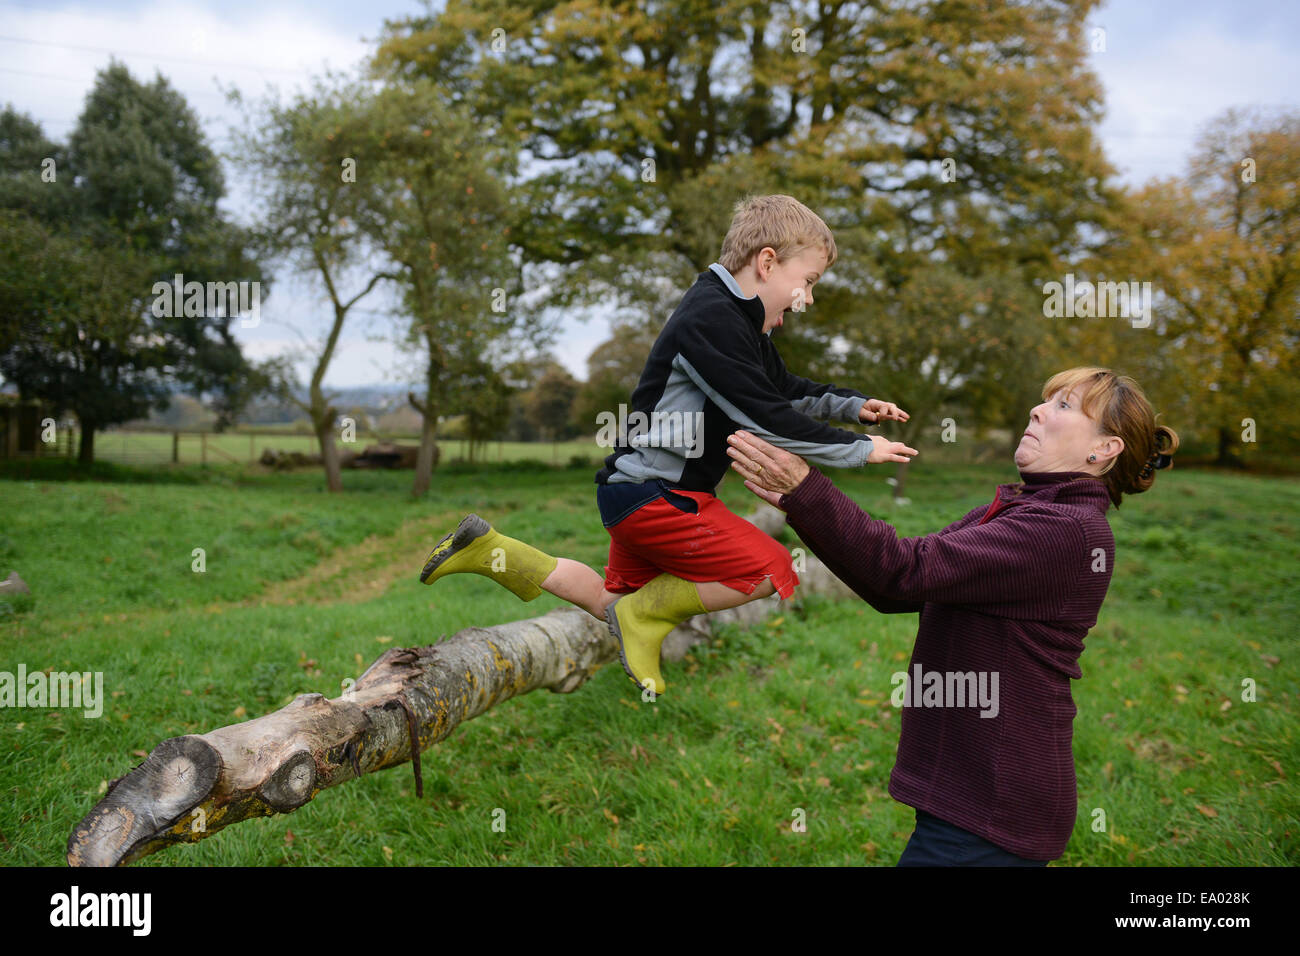 Kind Kinder Junge Outdoor Spaß Mit Oma In Die Arme Springen Vertrauen Vertrauen Uk Modell